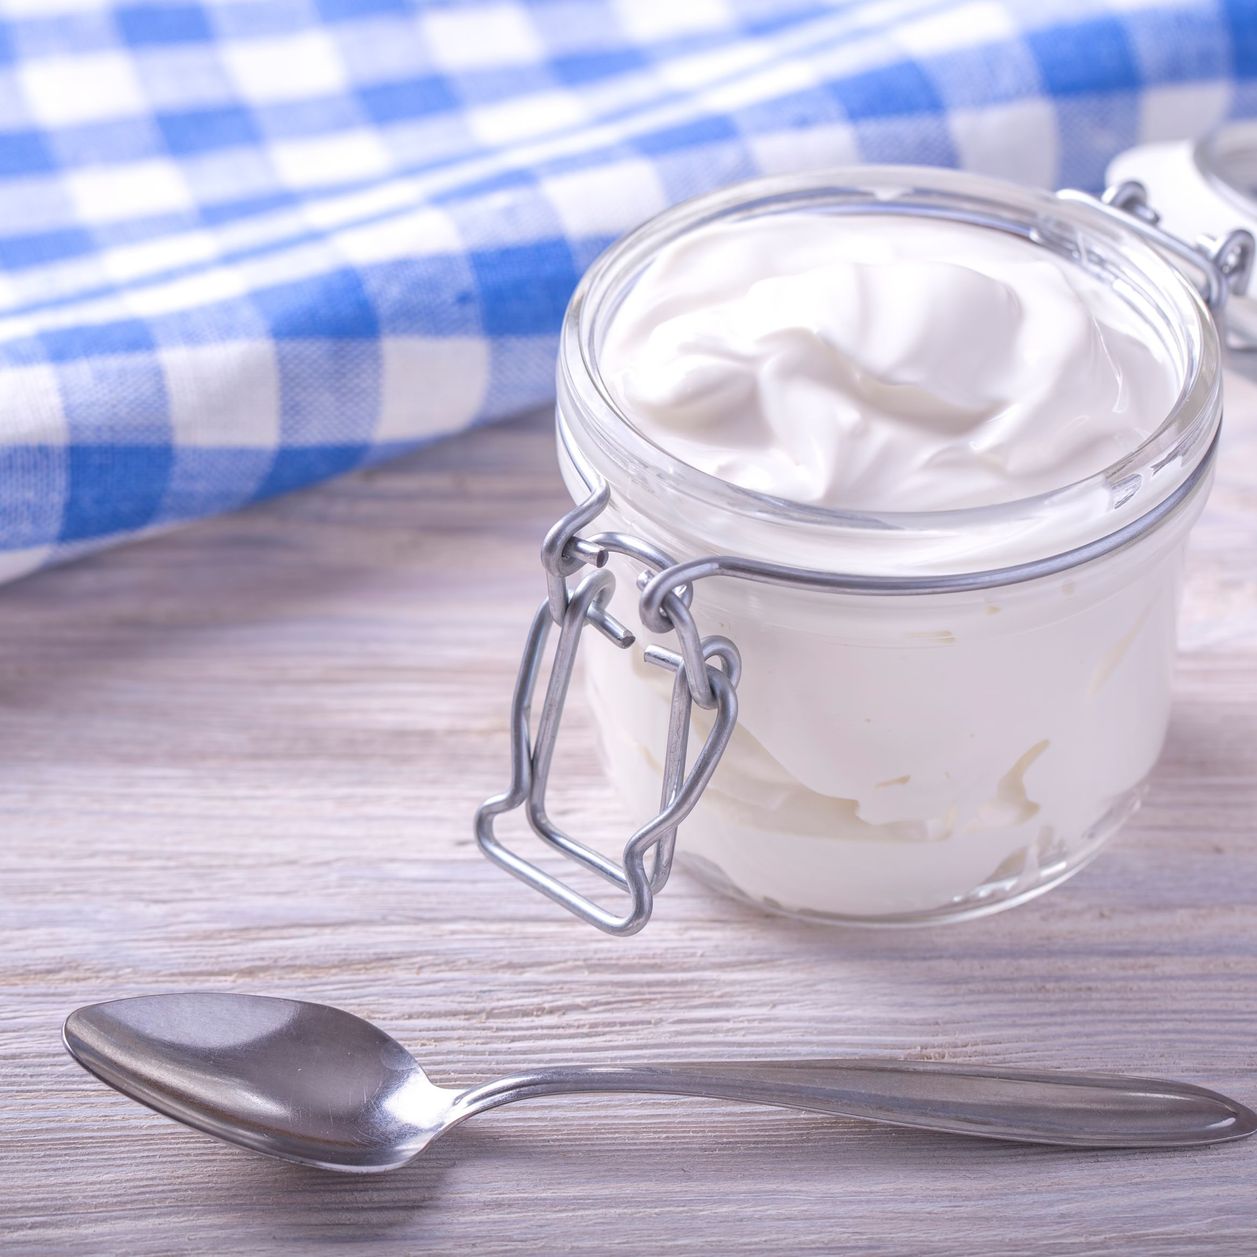 El yogur griego del supermercado: ¿Realmente tan saludable como creemos?